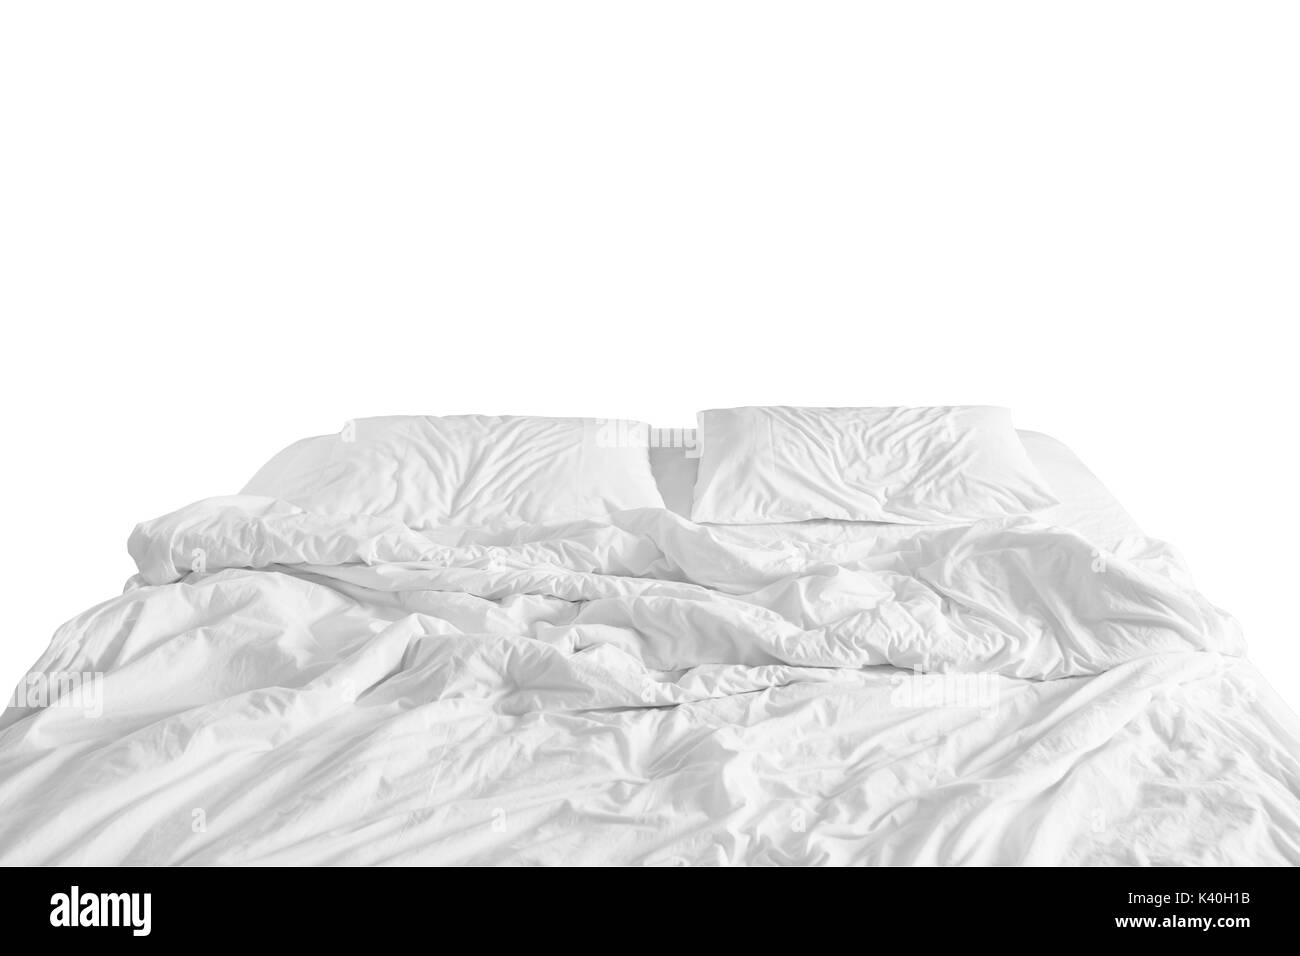 Ungemachten Bett mit zerknitterten Laken, Decke und Kissen nach Komfort Bettdecke schlafen, Aufwachen am Morgen Stockfoto